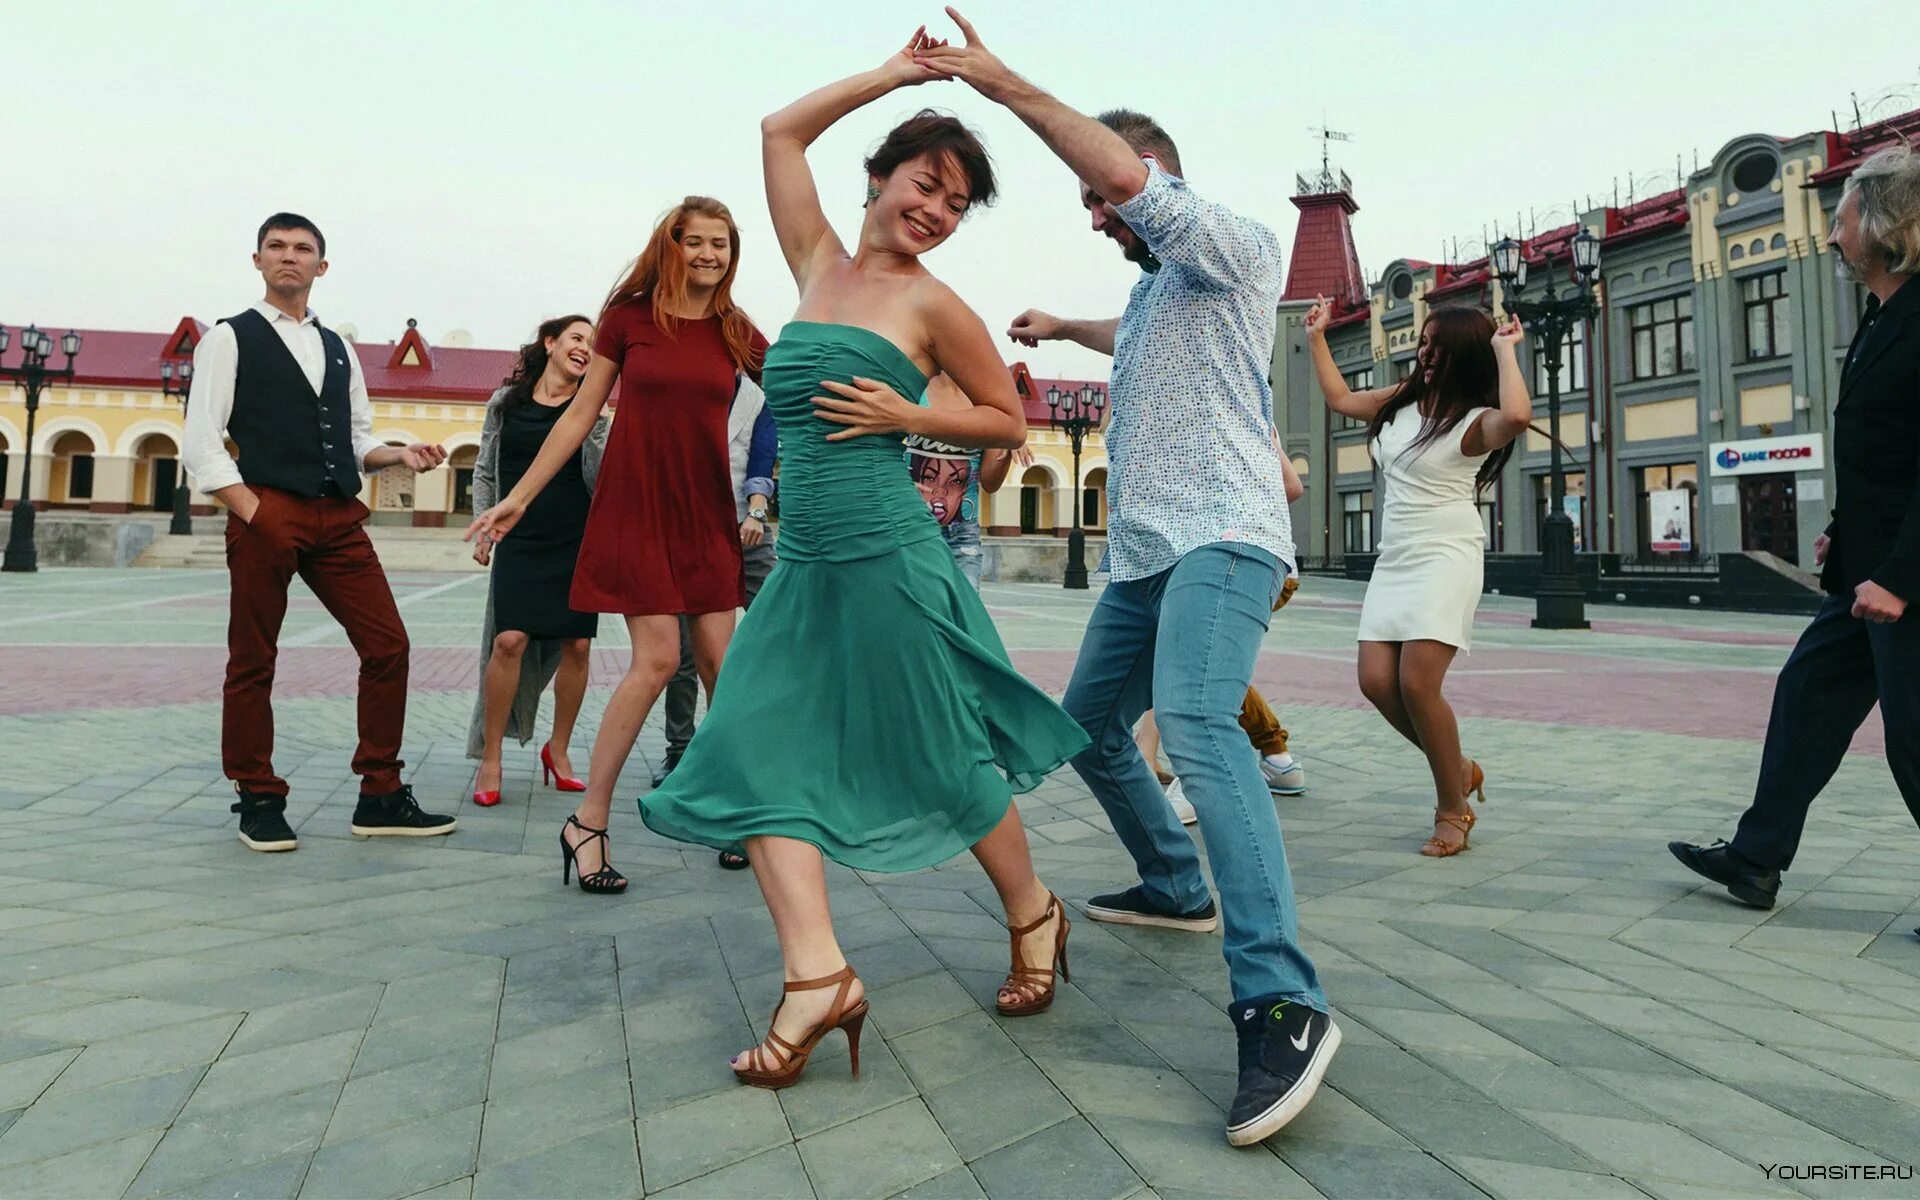 Песни чтобы танцевать. Люди танцуют. Танцы на улице. Танцующие люди на улице. Пара танцует на улице.